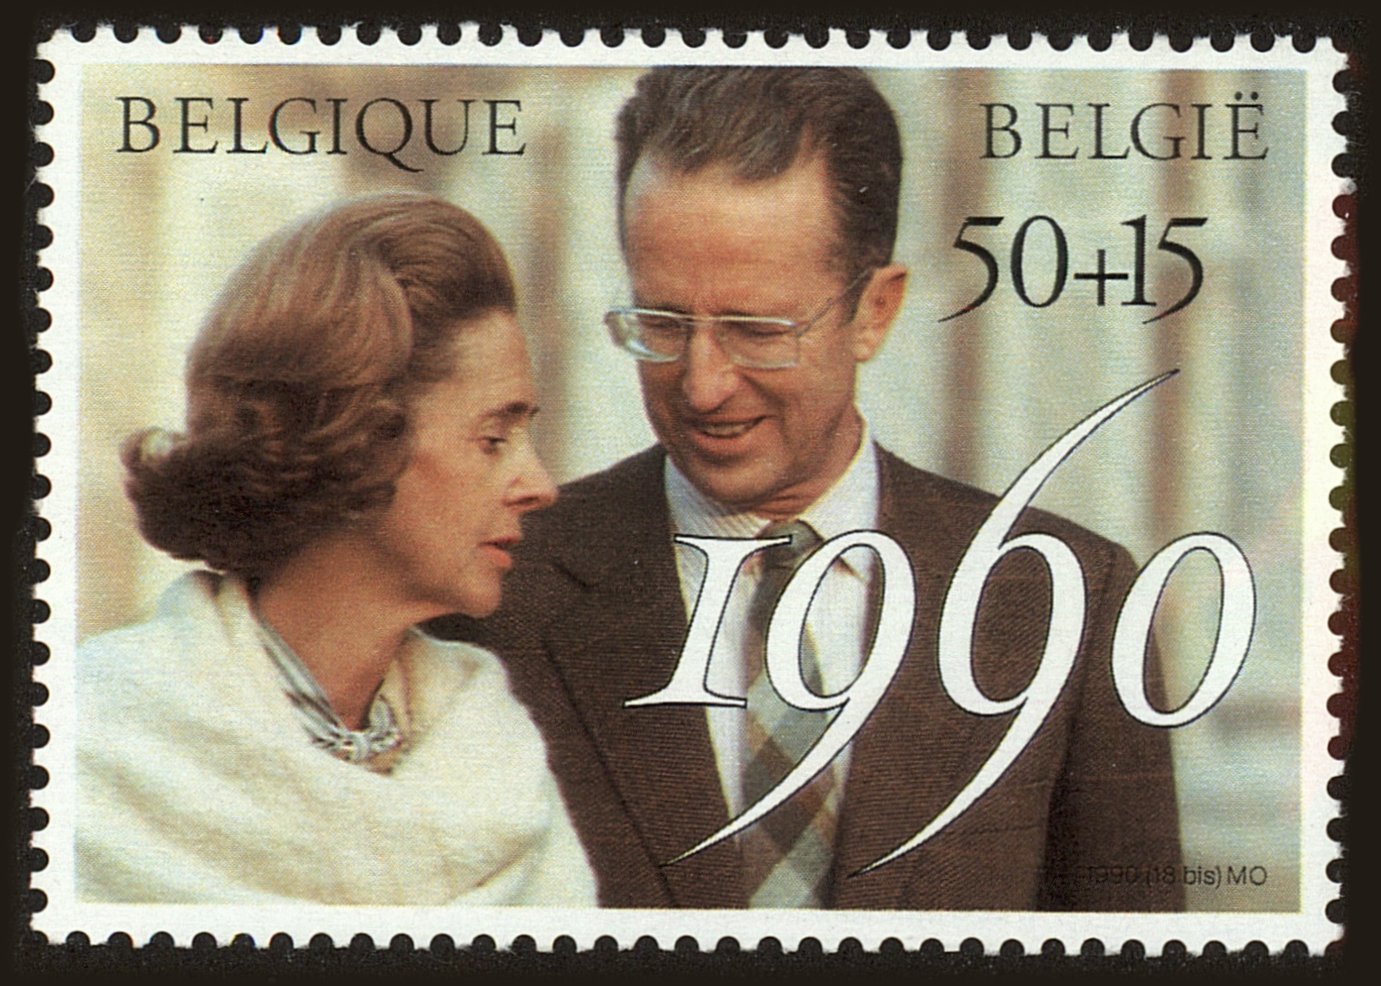 Front view of Belgium B1095 collectors stamp